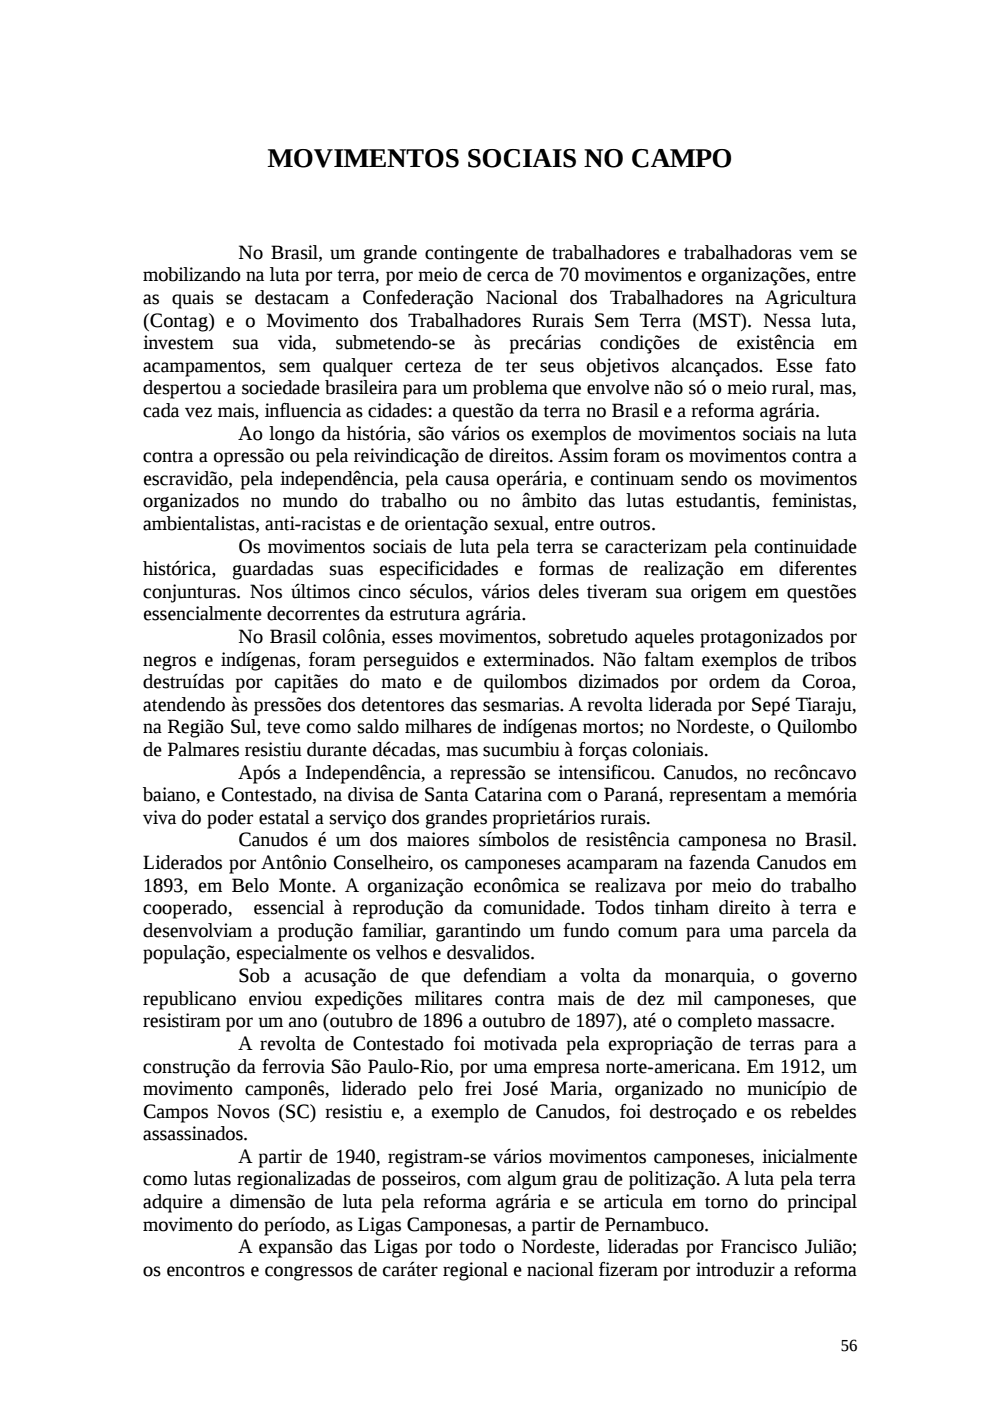 Page 56 from Relatório final da comissão